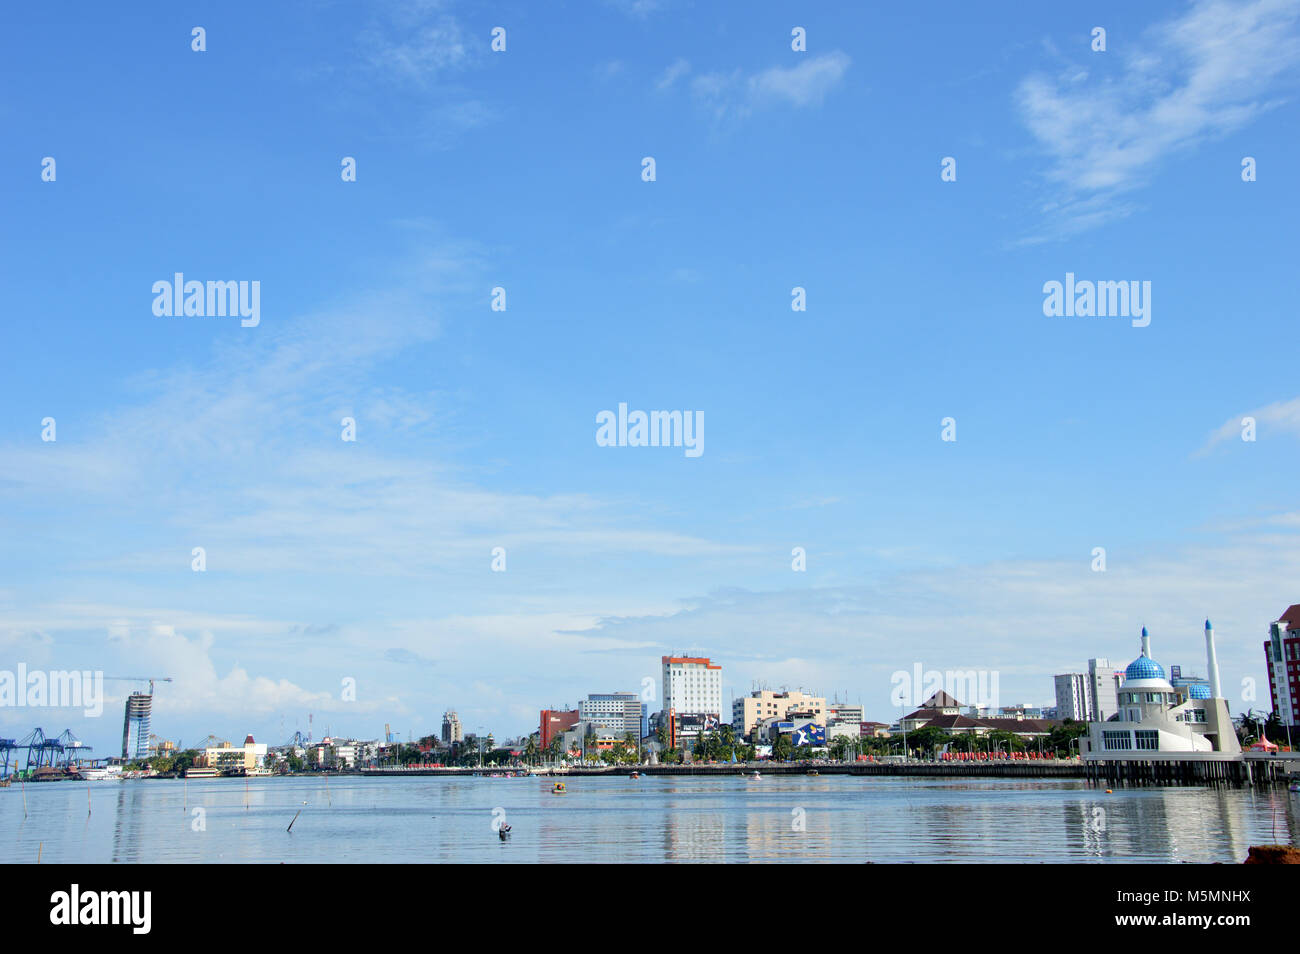 Losari Beach the city icon of Makassar Stock Photo - Alamy